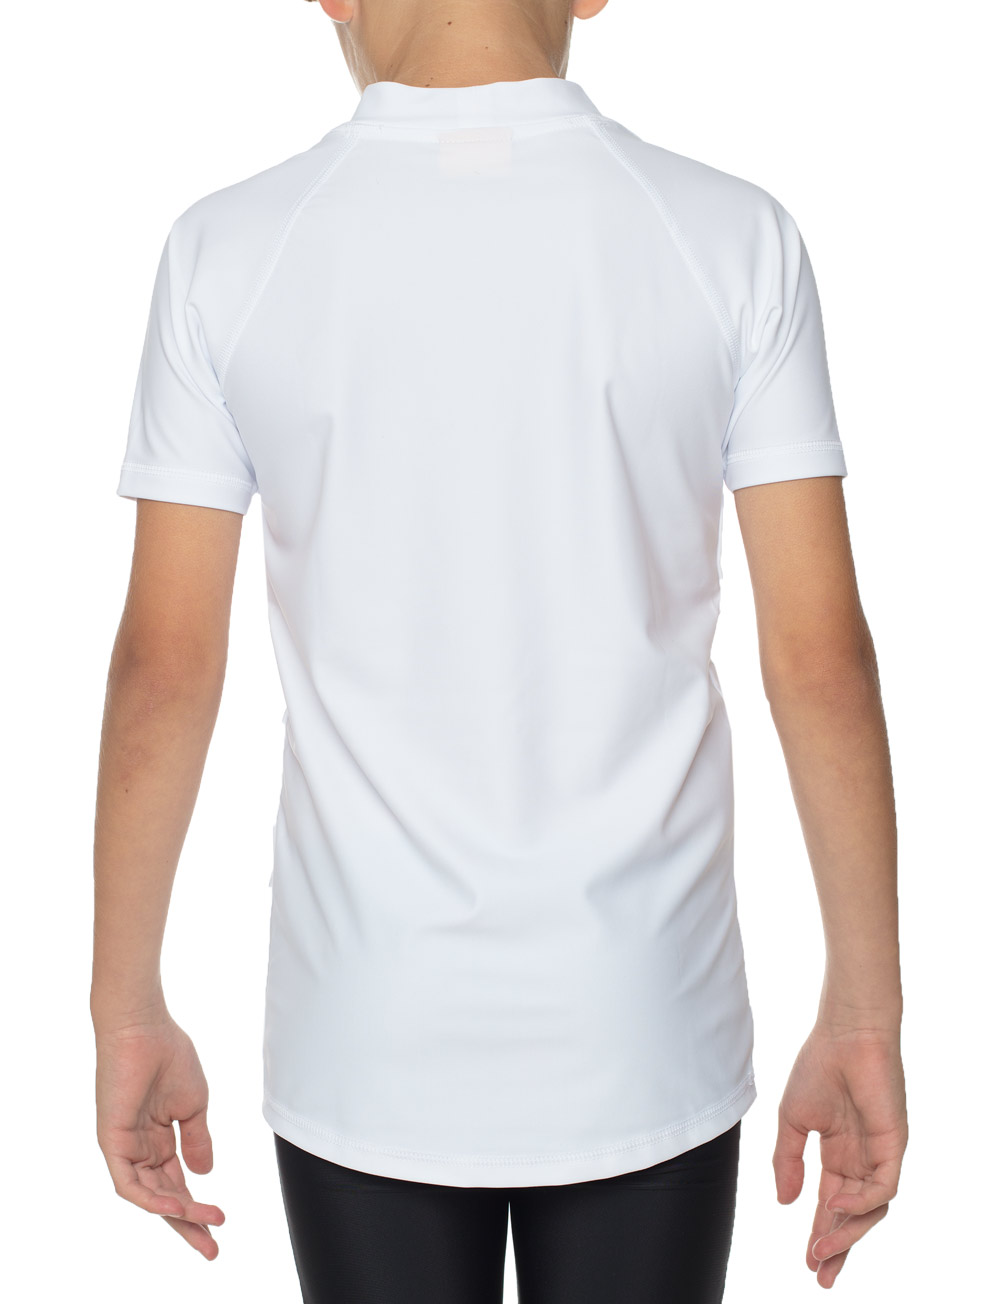 UV LSF 50+ Shirt für Kinder Econyl aus recyceltem Material weiß Piraten